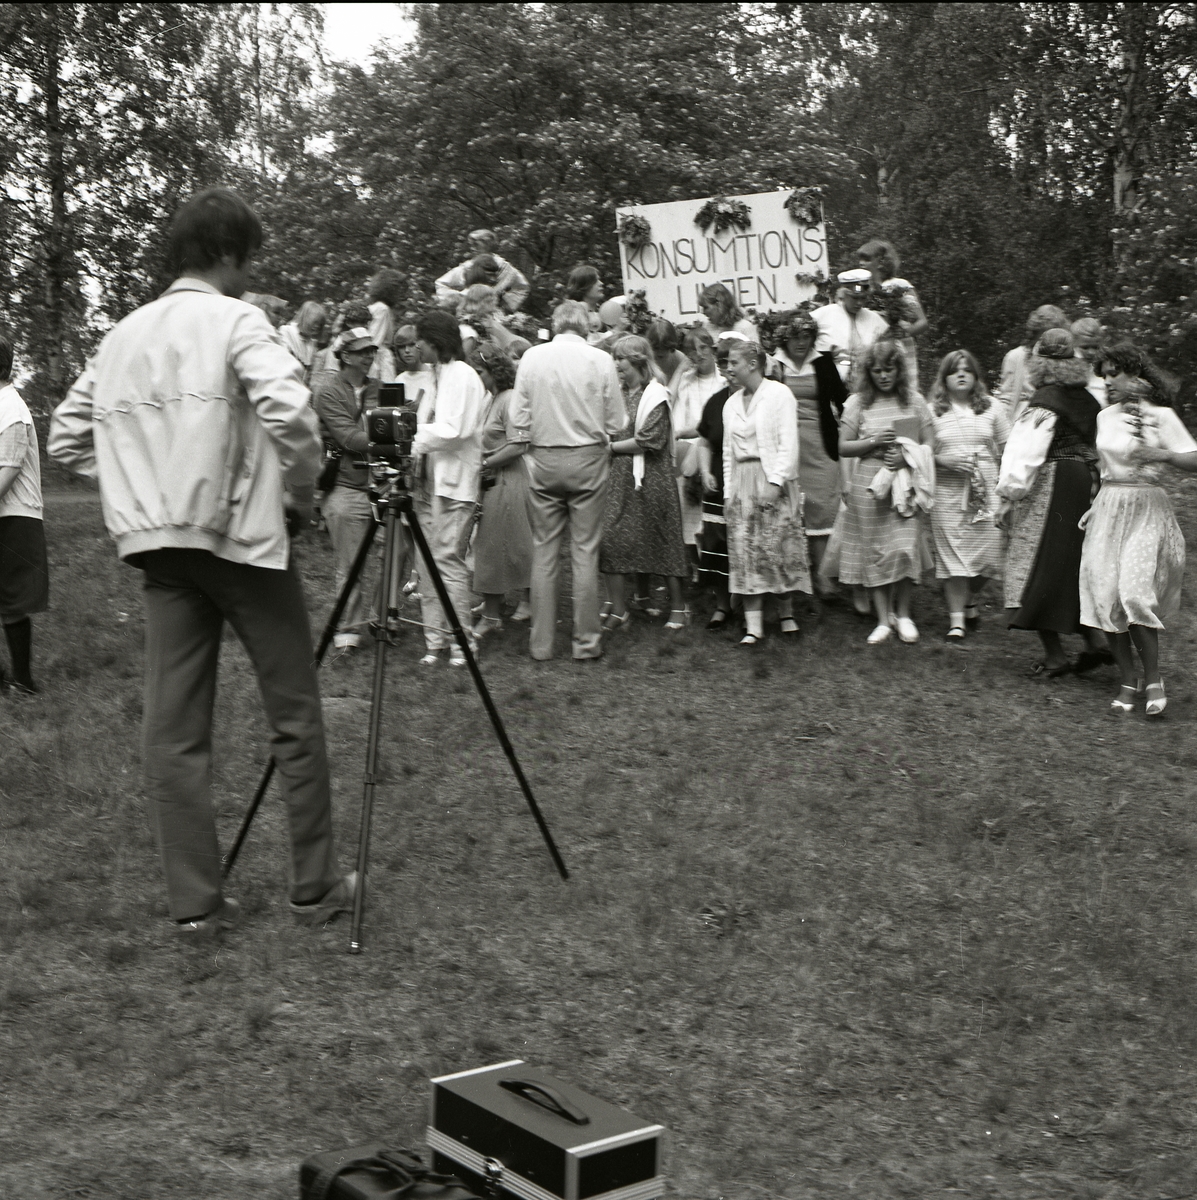 Konsumtionslinjen står skrivet på ett plakat dekorerat med blommor. Framför plakatet står en grupp med unga män och kvinnor i fina kläder och studentmössor. En fotograf står i förgrunden vid sitt stativ och har precis fotat gruppen som börjat skingra sig åt olika håll. Lövträden i bakgrunden bär sin fulla sommarskrud och skänker en sommarkänsla till bilden. Examensbilden är tagen i Bollnäs den 4 juni 1981.